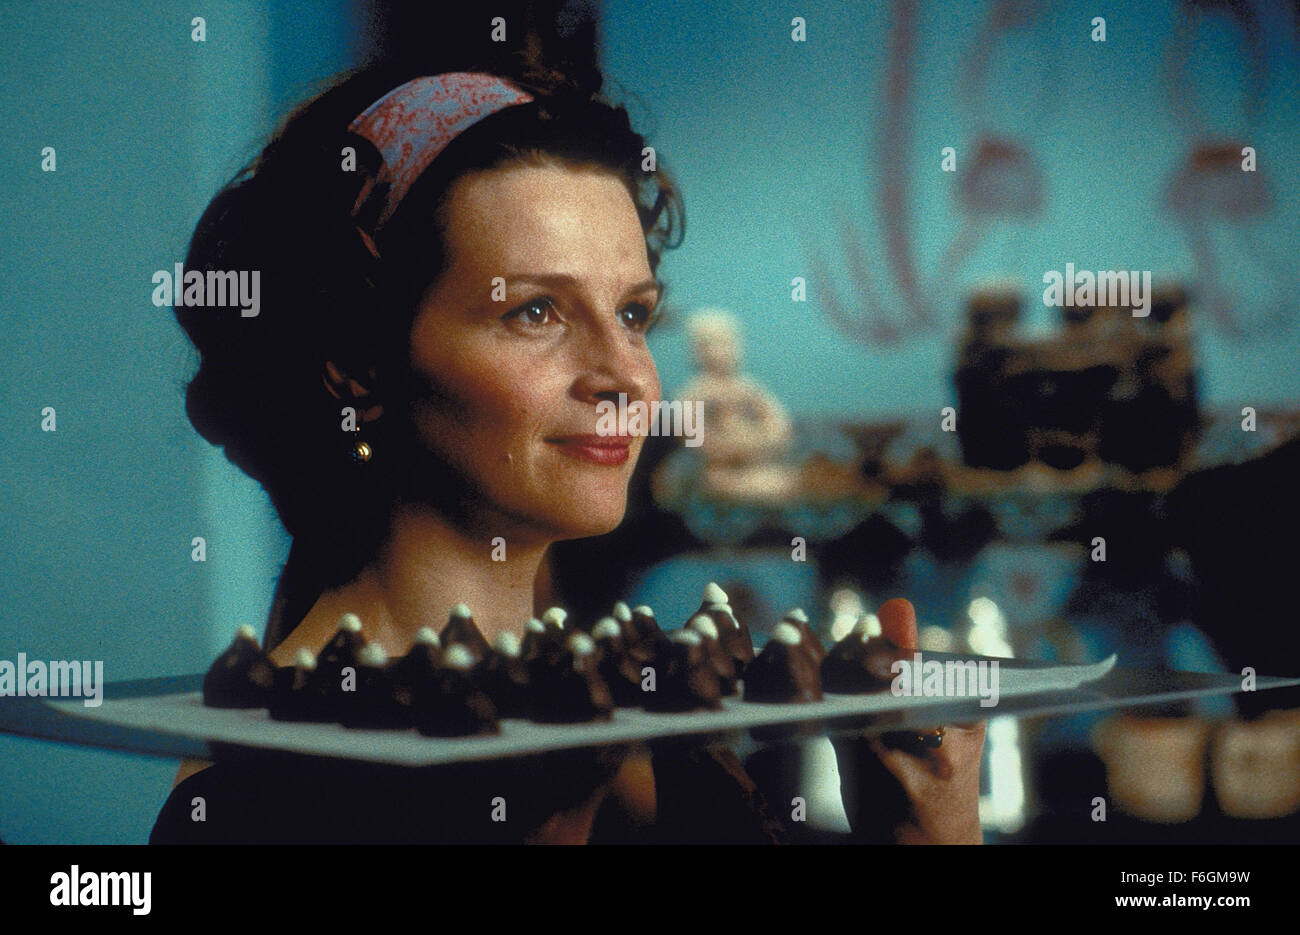 Dic 15, 2000; Los Angeles, CA, Stati Uniti d'America; attrice JULIETTE BINOCHE come Vianne Rocher in la Miramax film commedia romantica, "Chocolat". Foto Stock